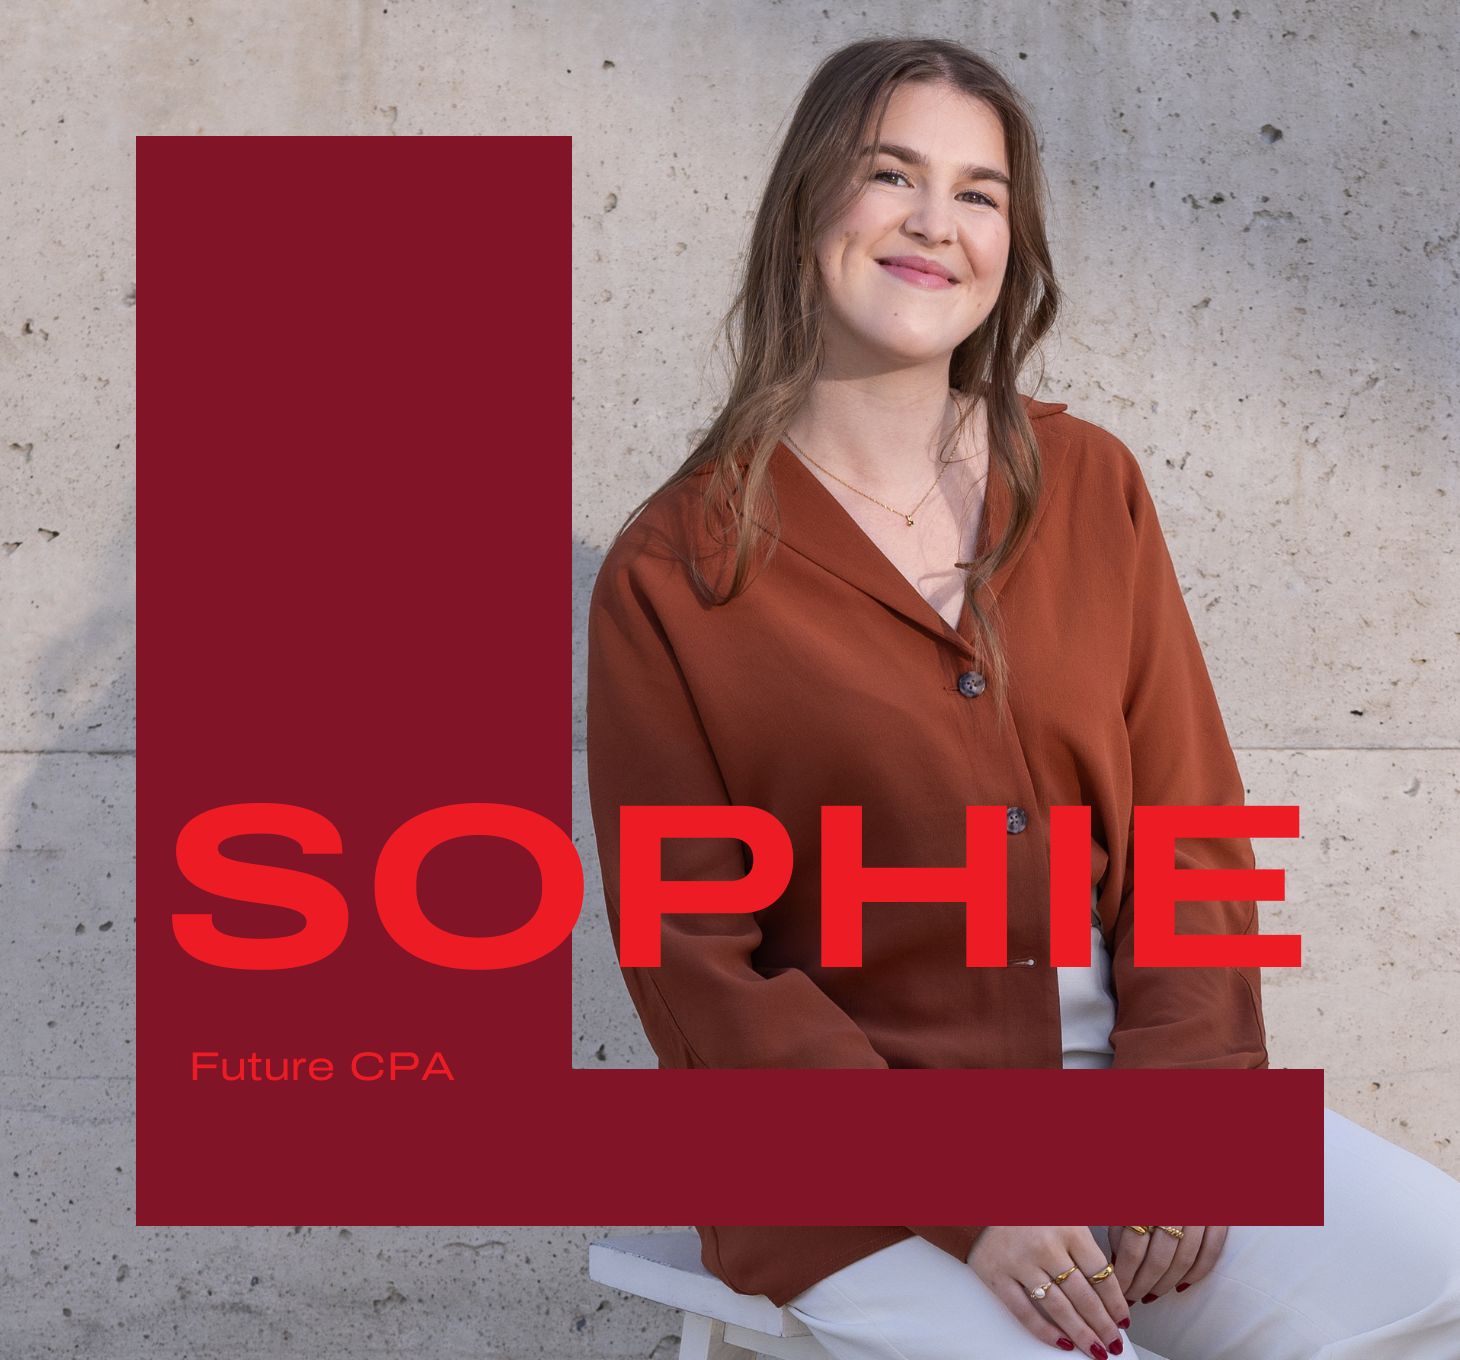 Carriere mallette offres emploi stagiaires stage étudiants Sophie Lacroix